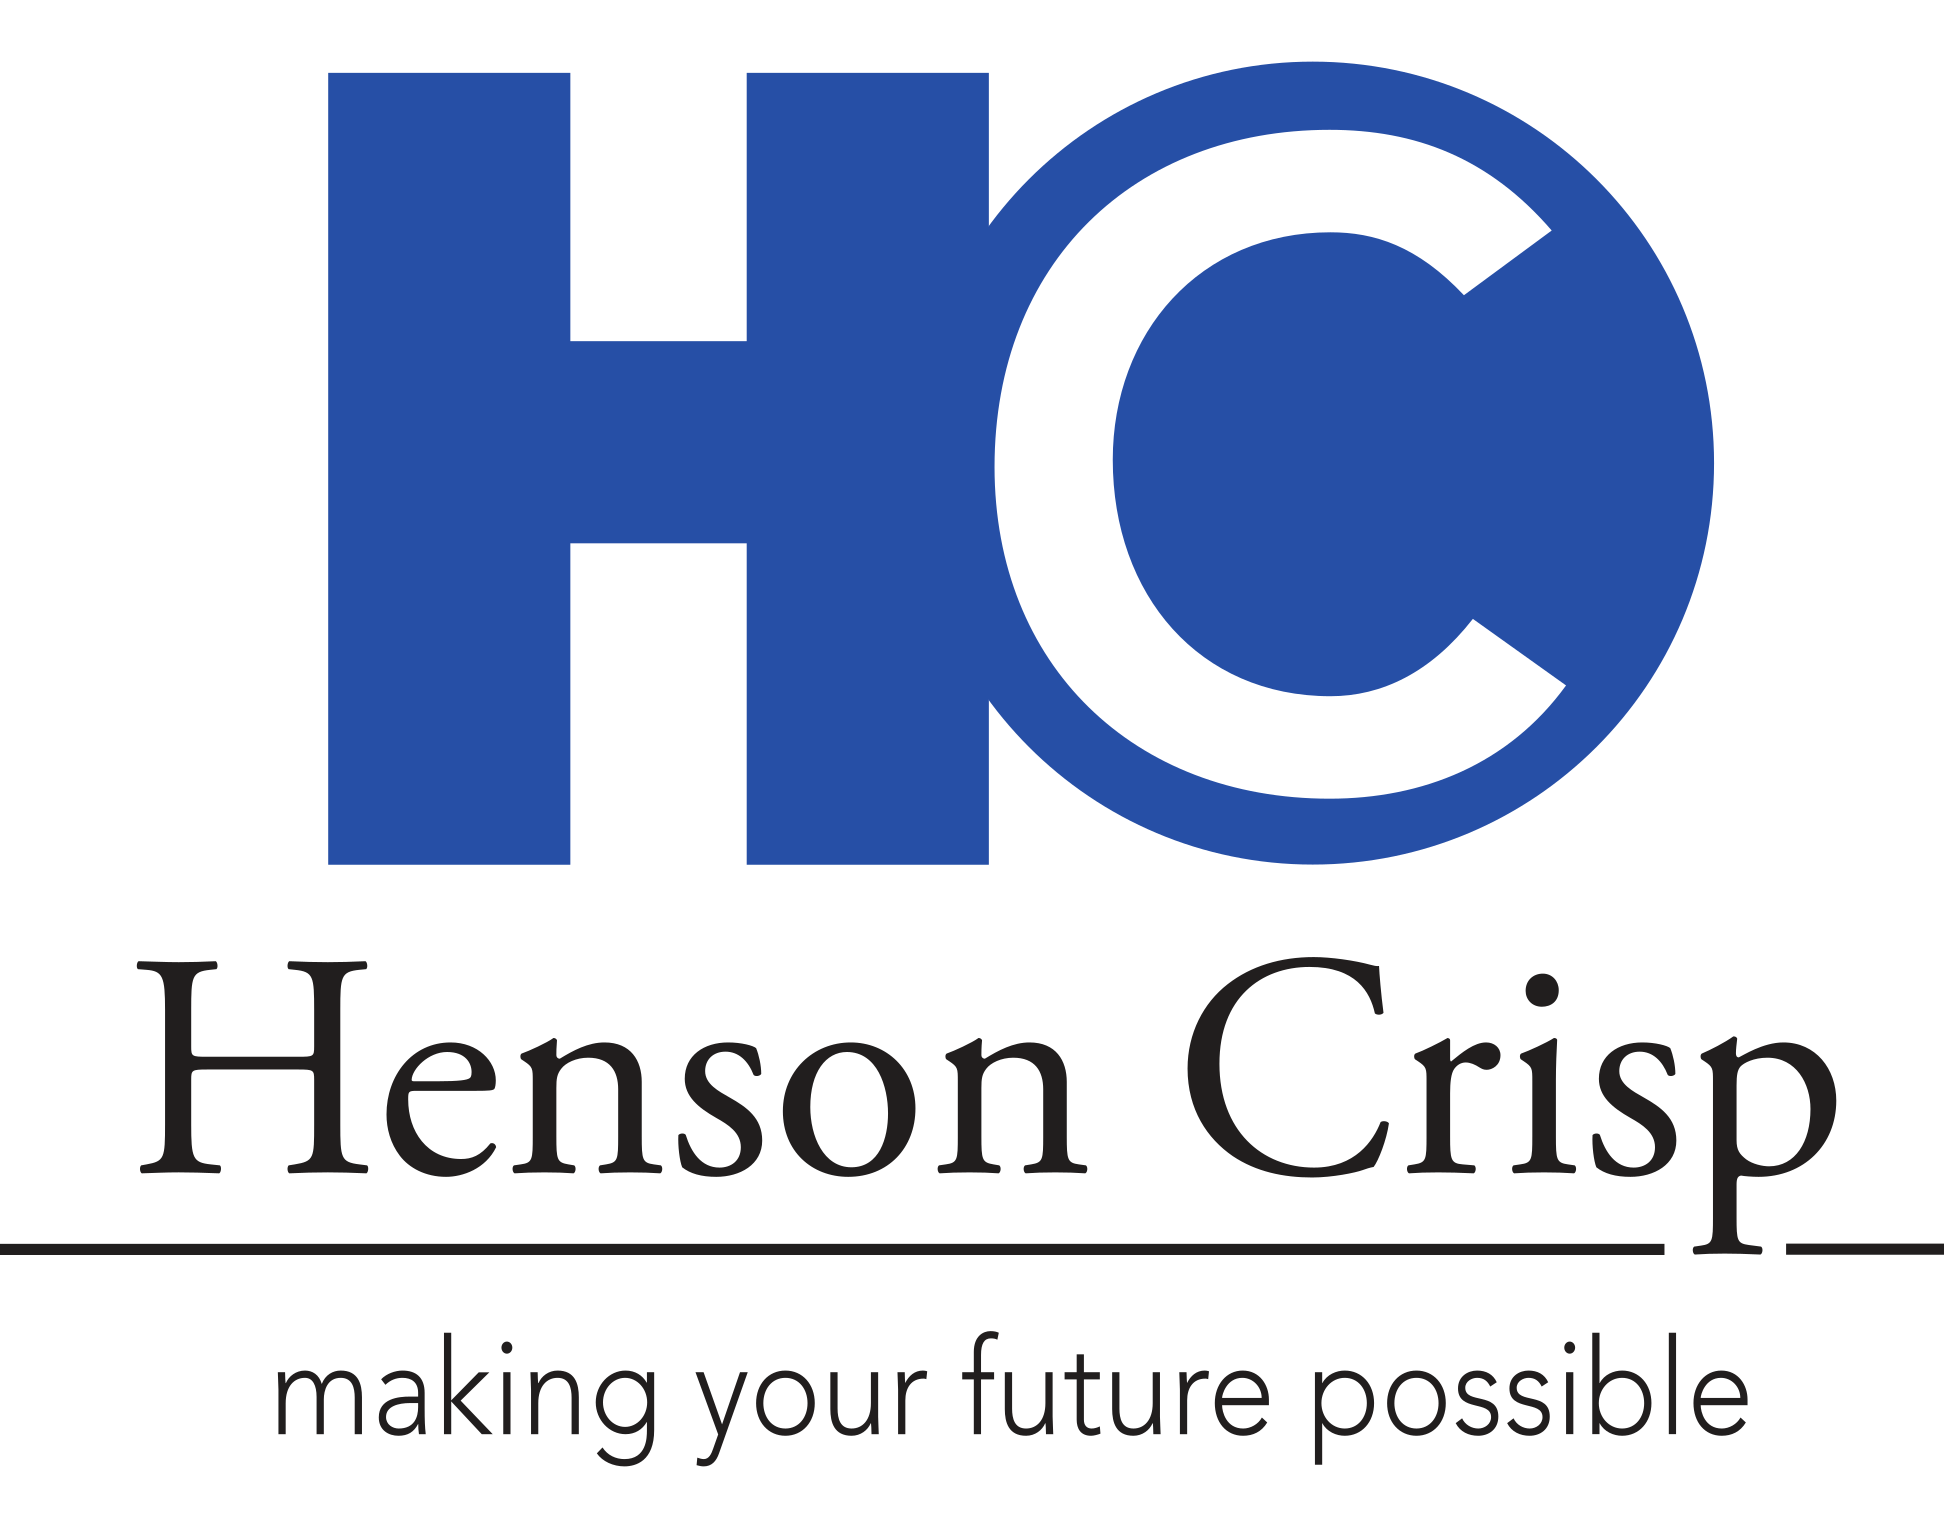 Henson Crisp